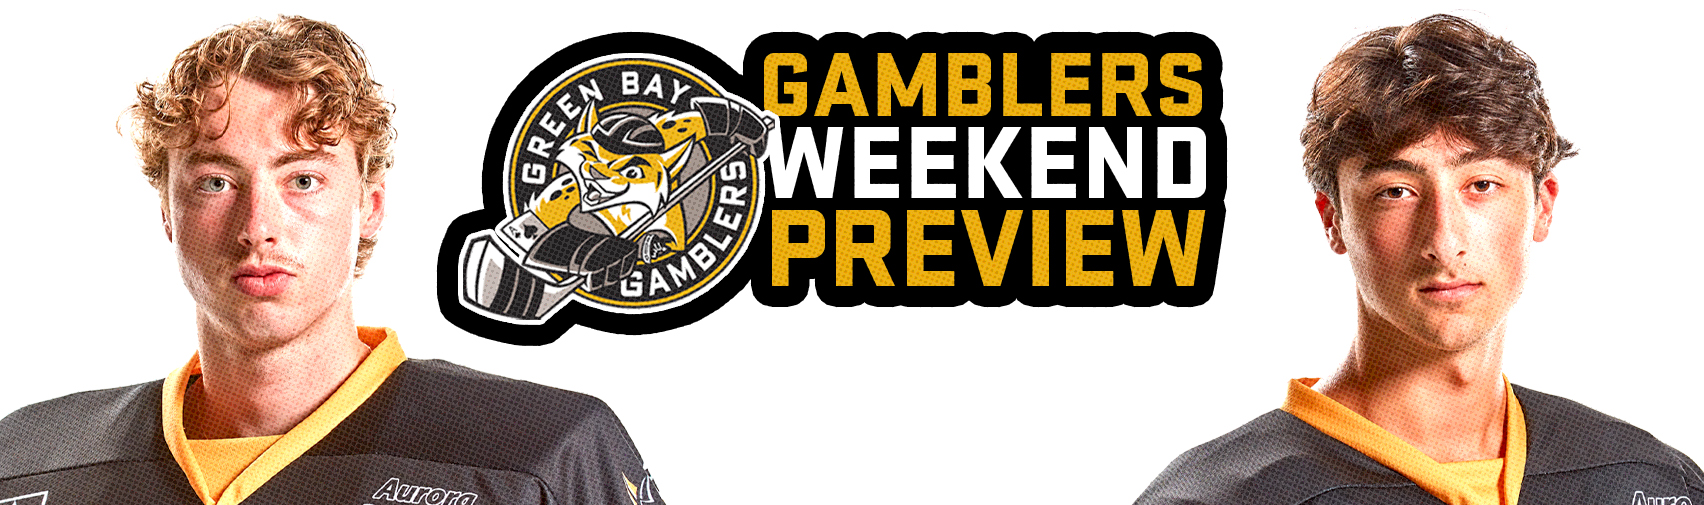 gamblers-weekend-preview-10-29